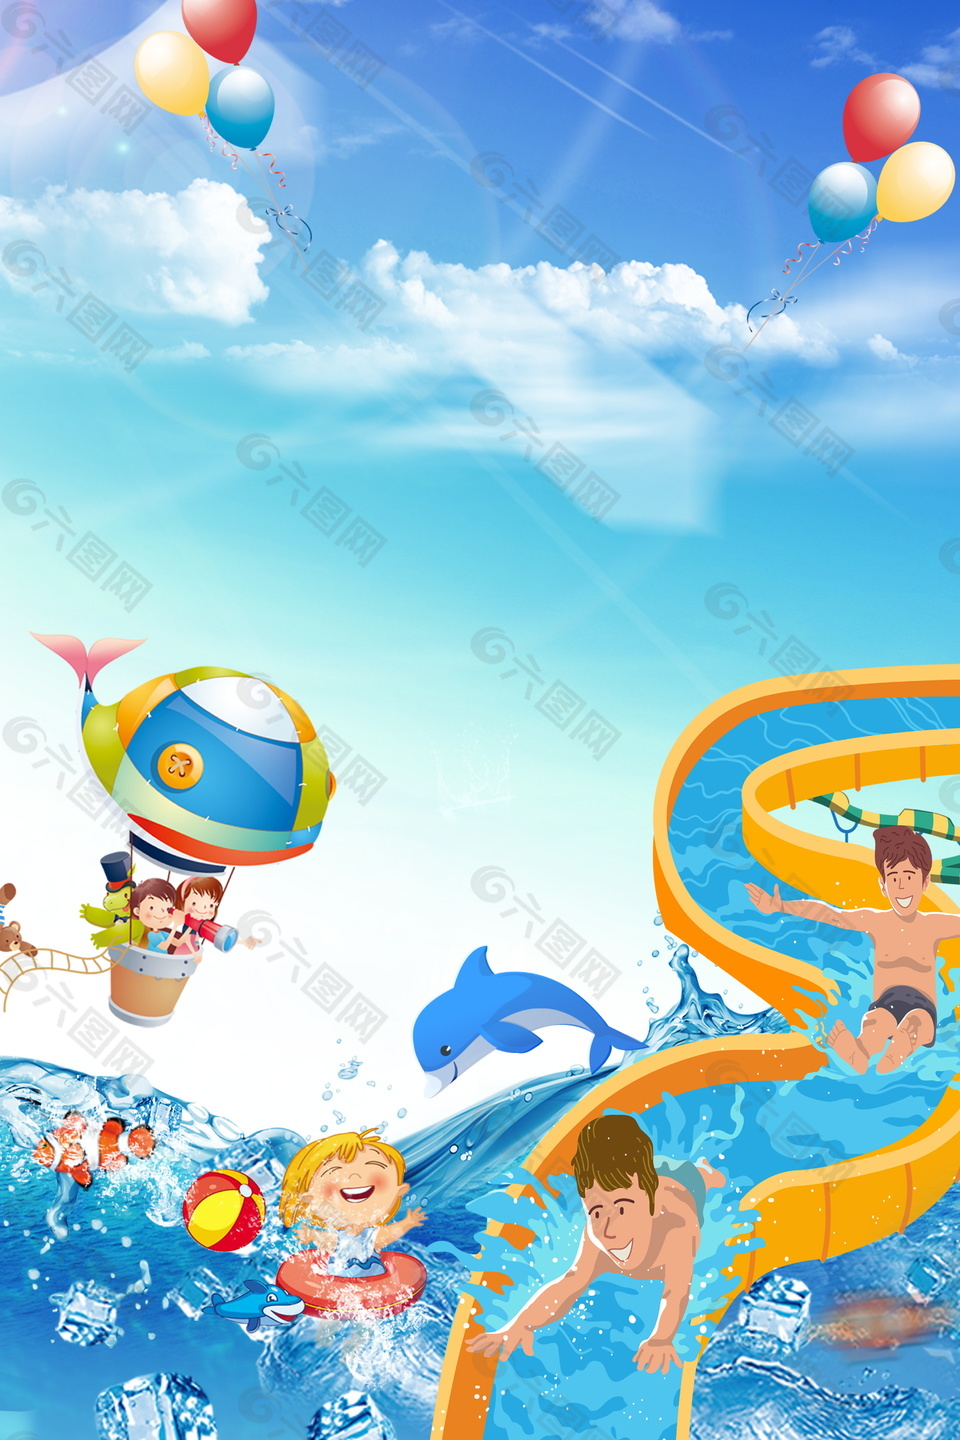 动漫欢乐游玩水上乐园背景素材